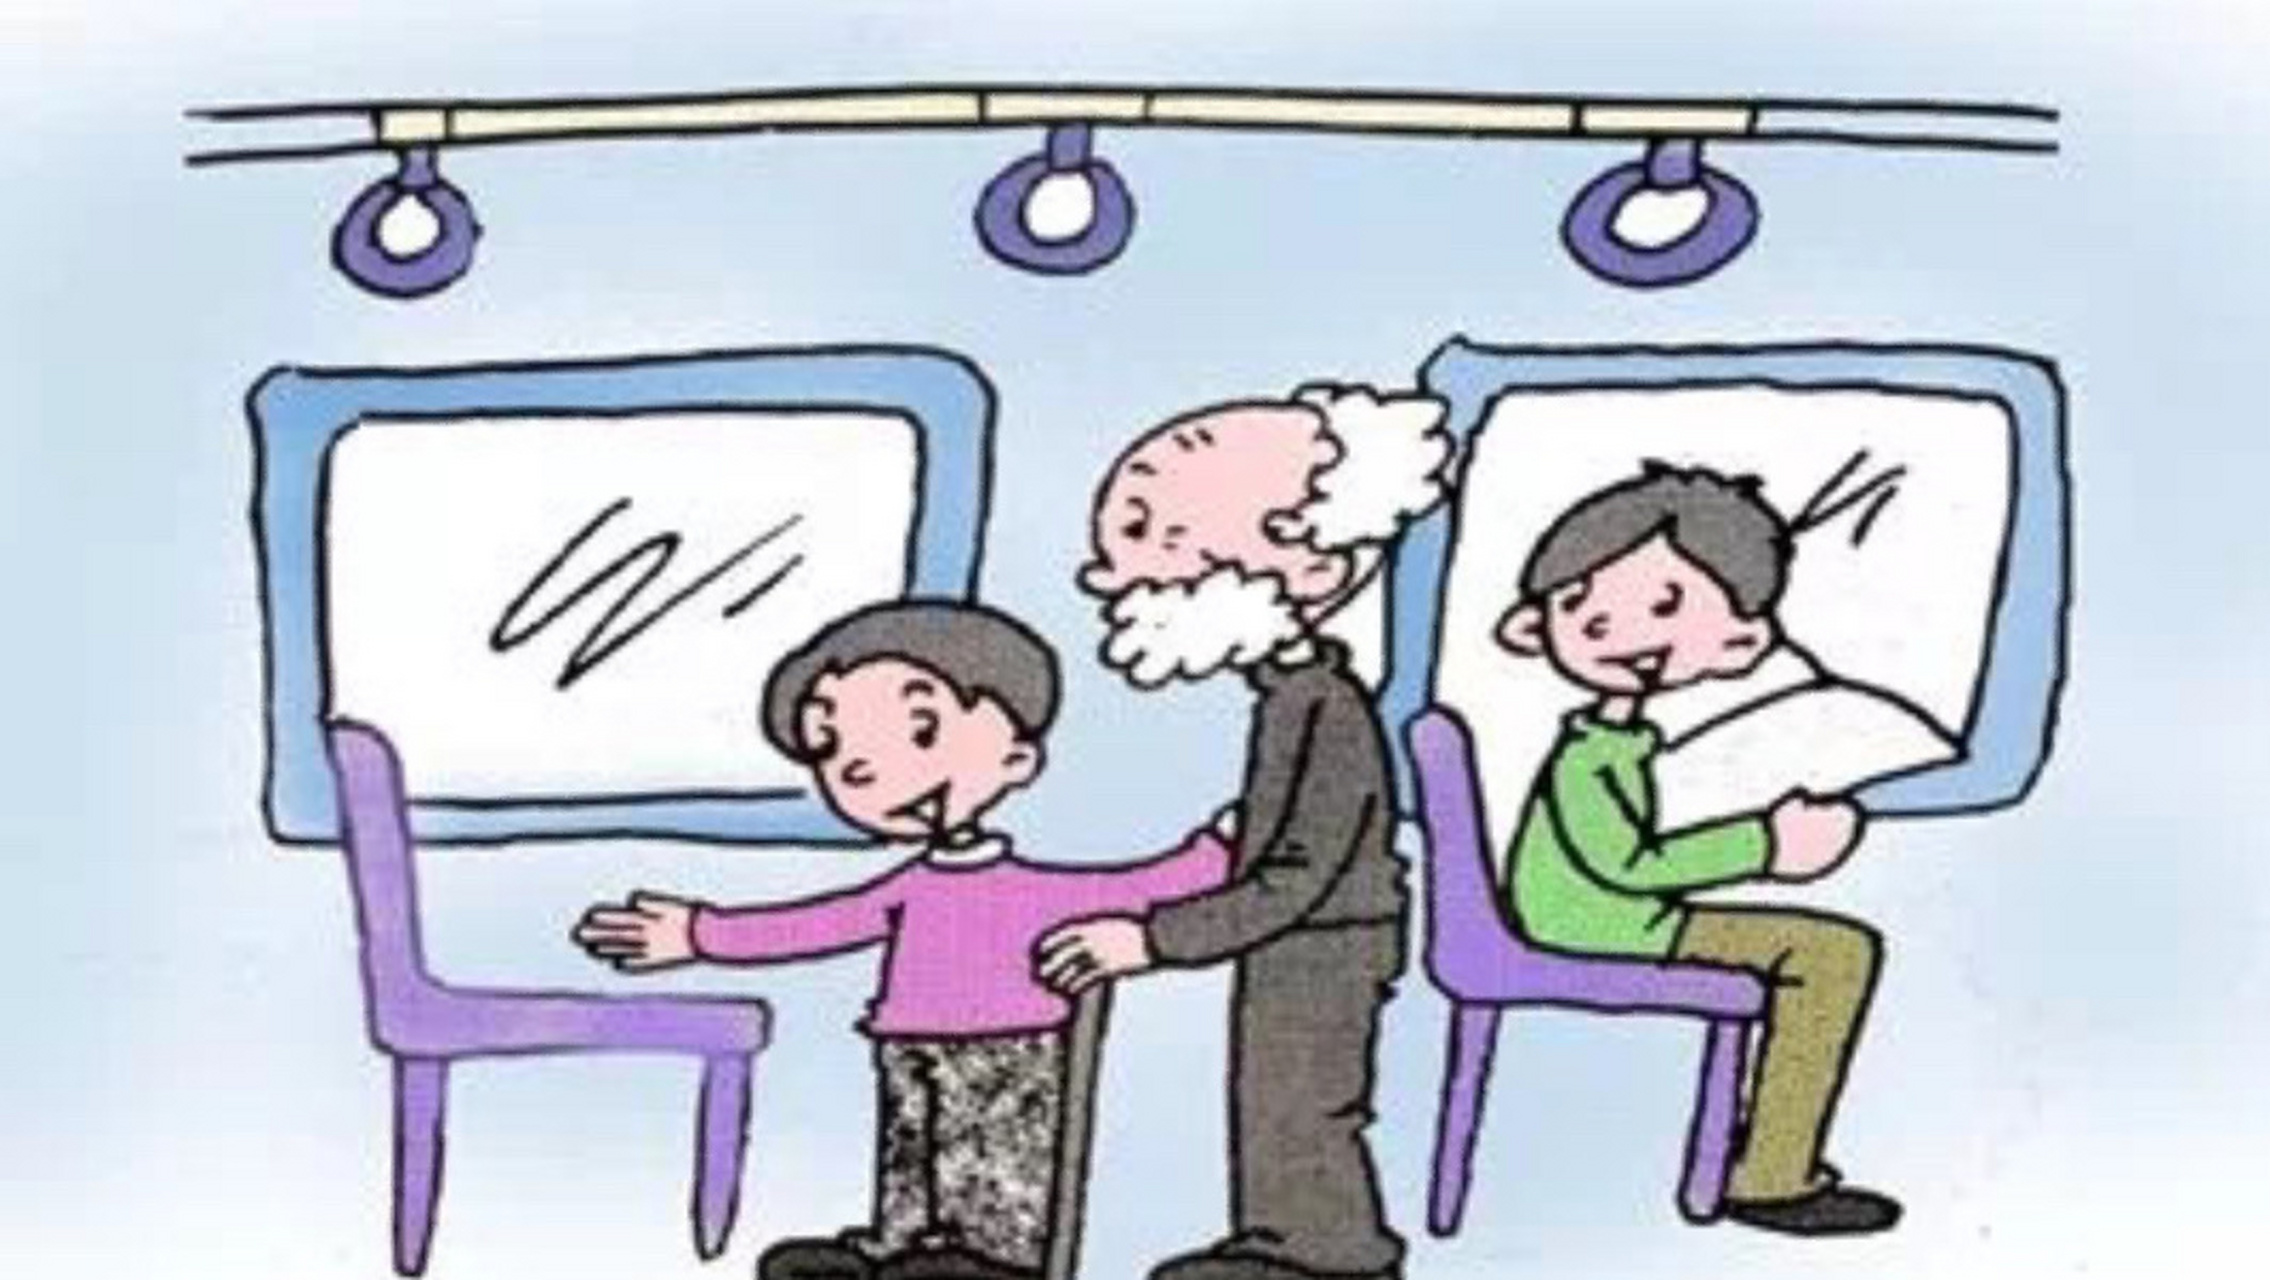 让座 早晨,小明坐在公交车上,到站的时候上来一位胡子白花花的老人,拄